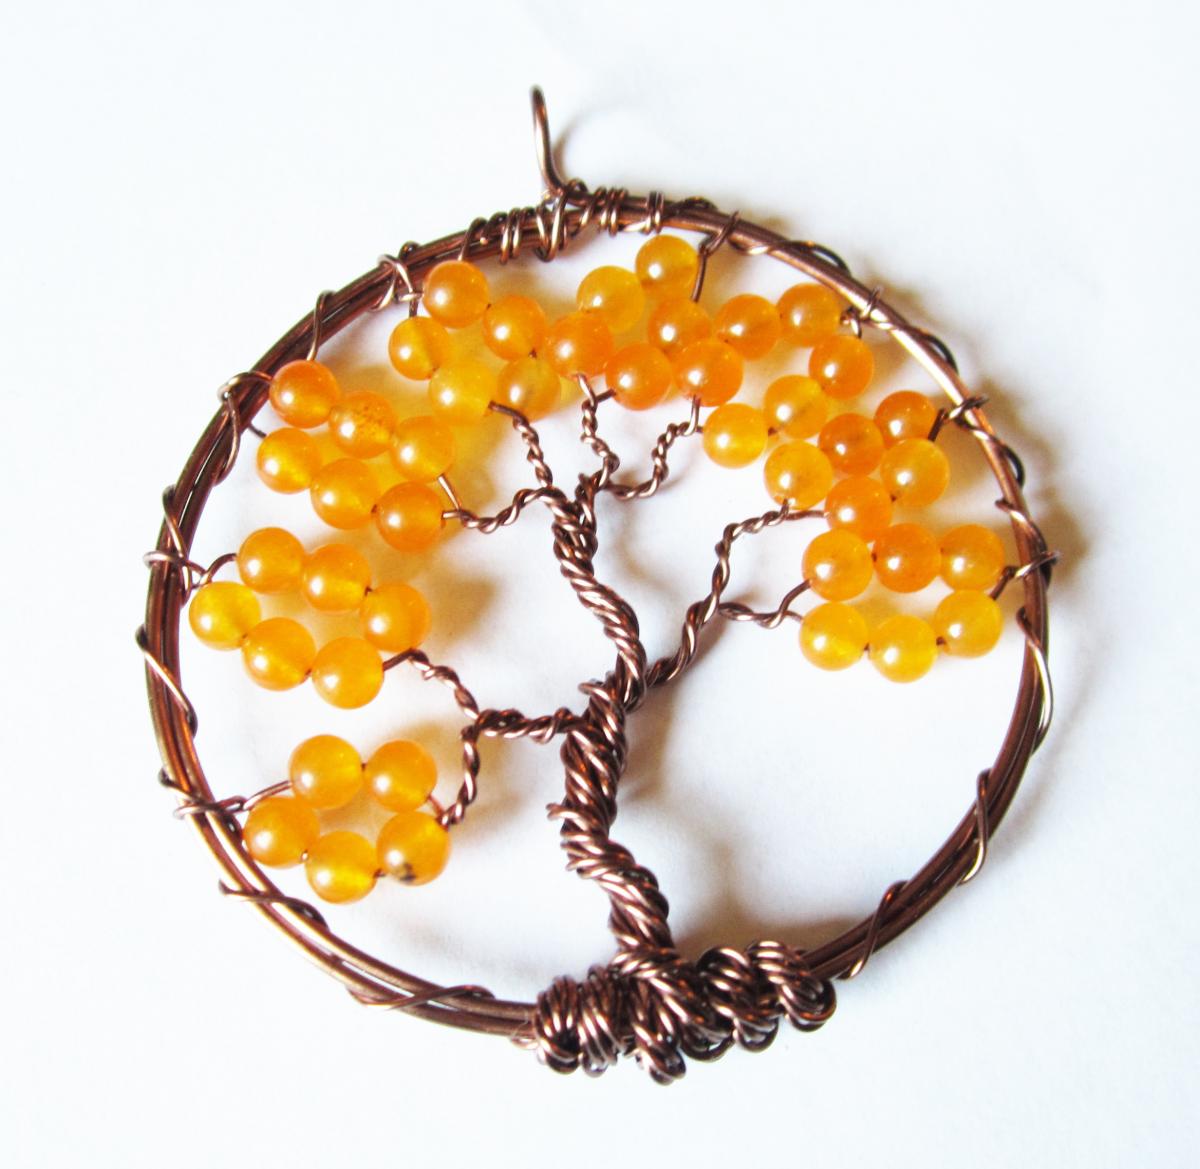 Orange Tree Of Life Pendant - Bohemian Jewelry - Antique Copper Trees - Hippie, Boho Style